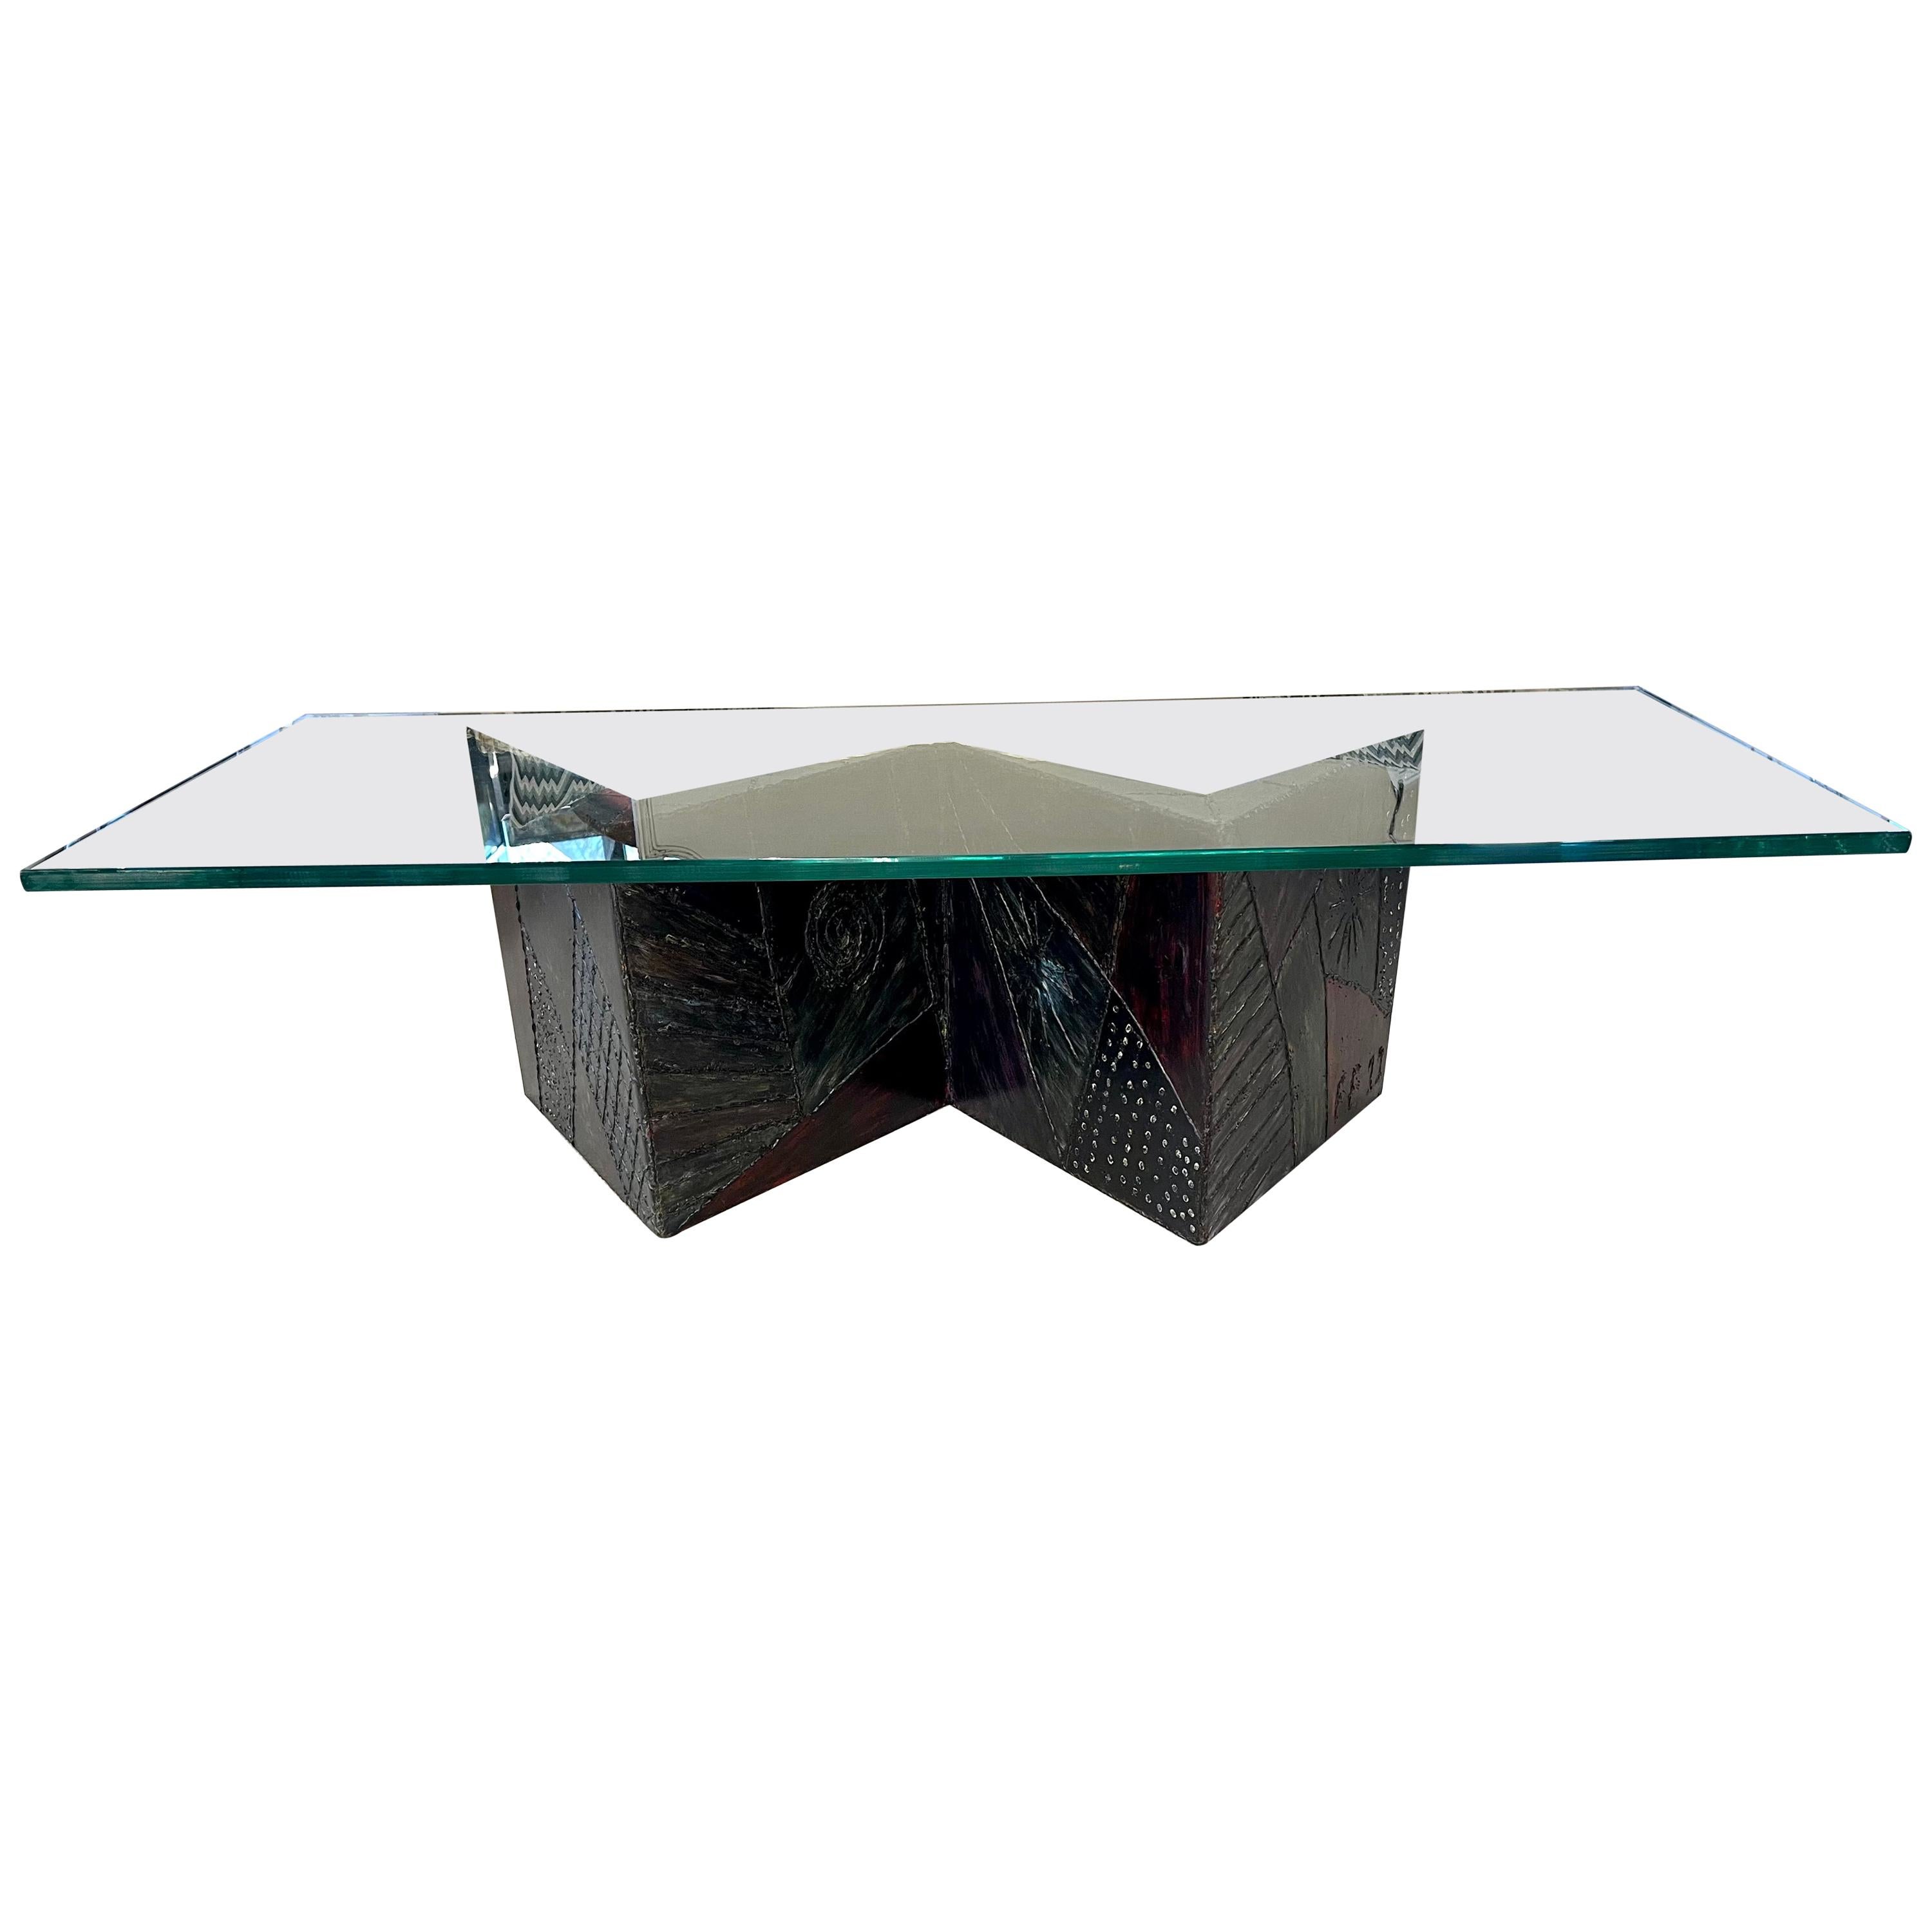 Table basse moderne du milieu du siècle dernier, style Paul Evans, métal patchwork, verre en vente